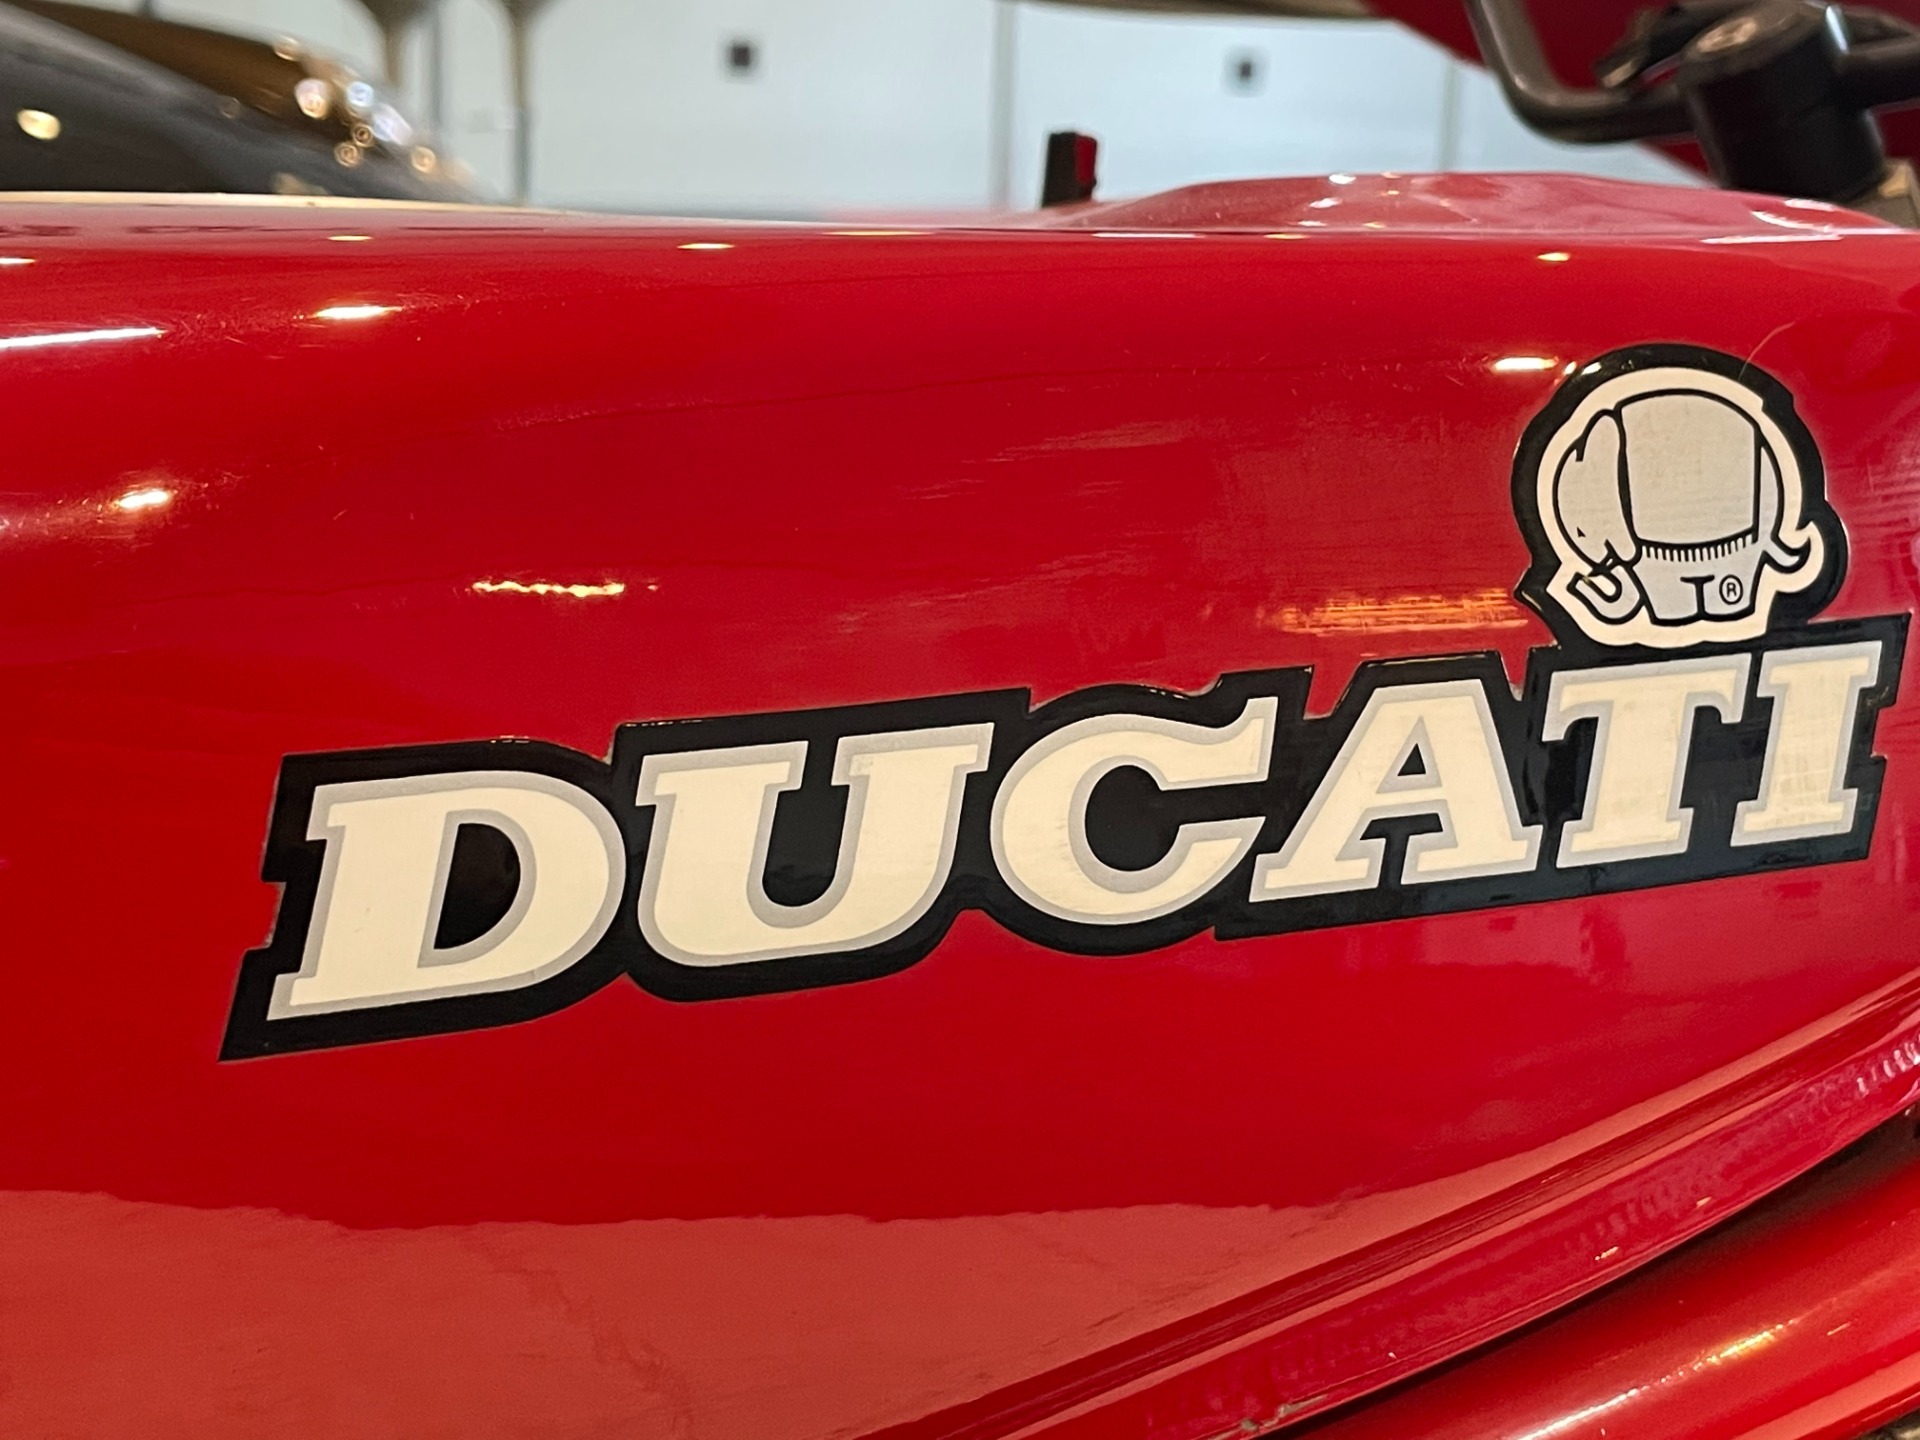 Used 1986 Ducati 750 F1 Desmo